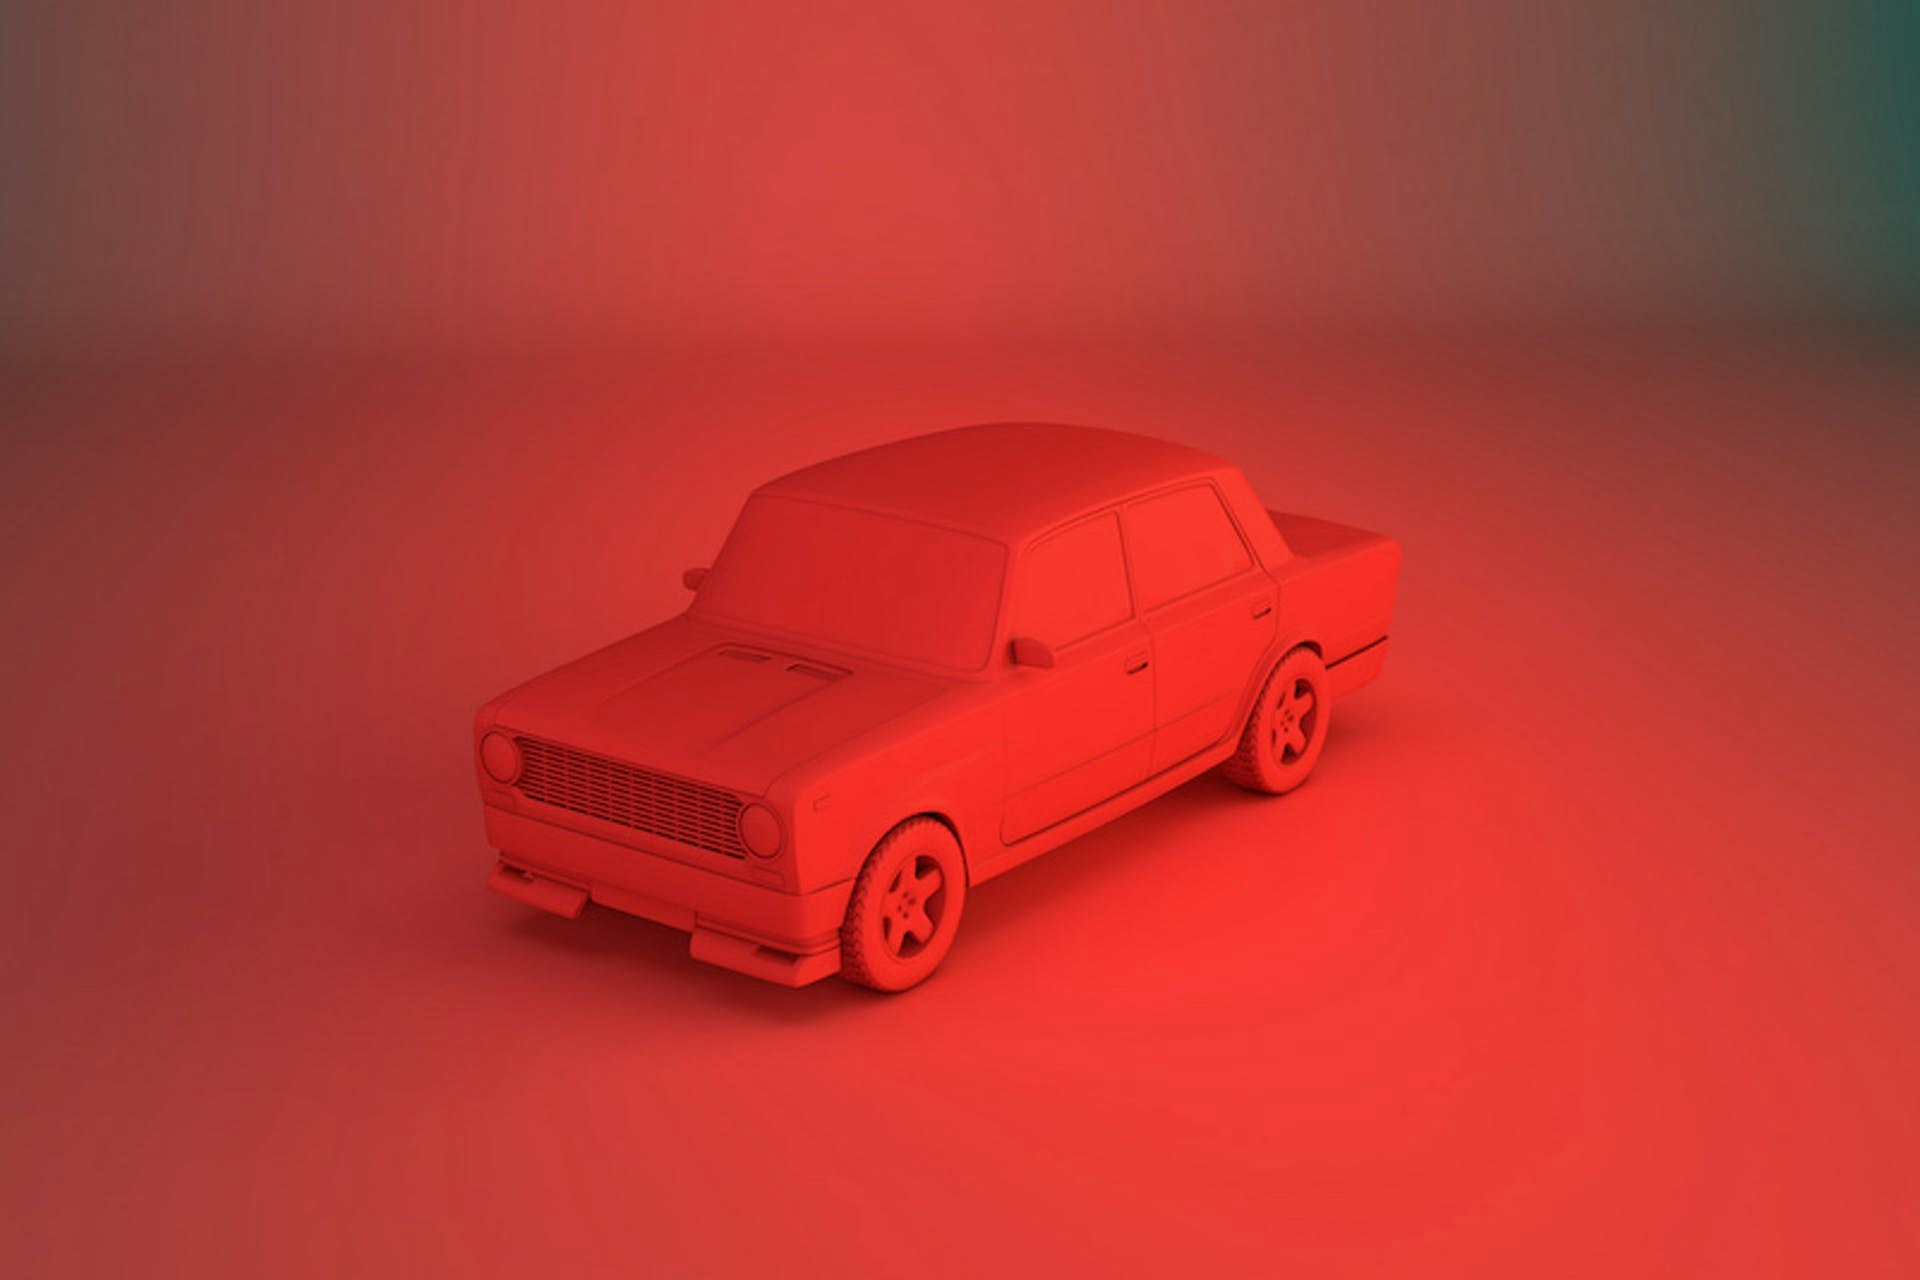 Bild eines roten Autos in einem roten Raum als Bild für Brand Awareness